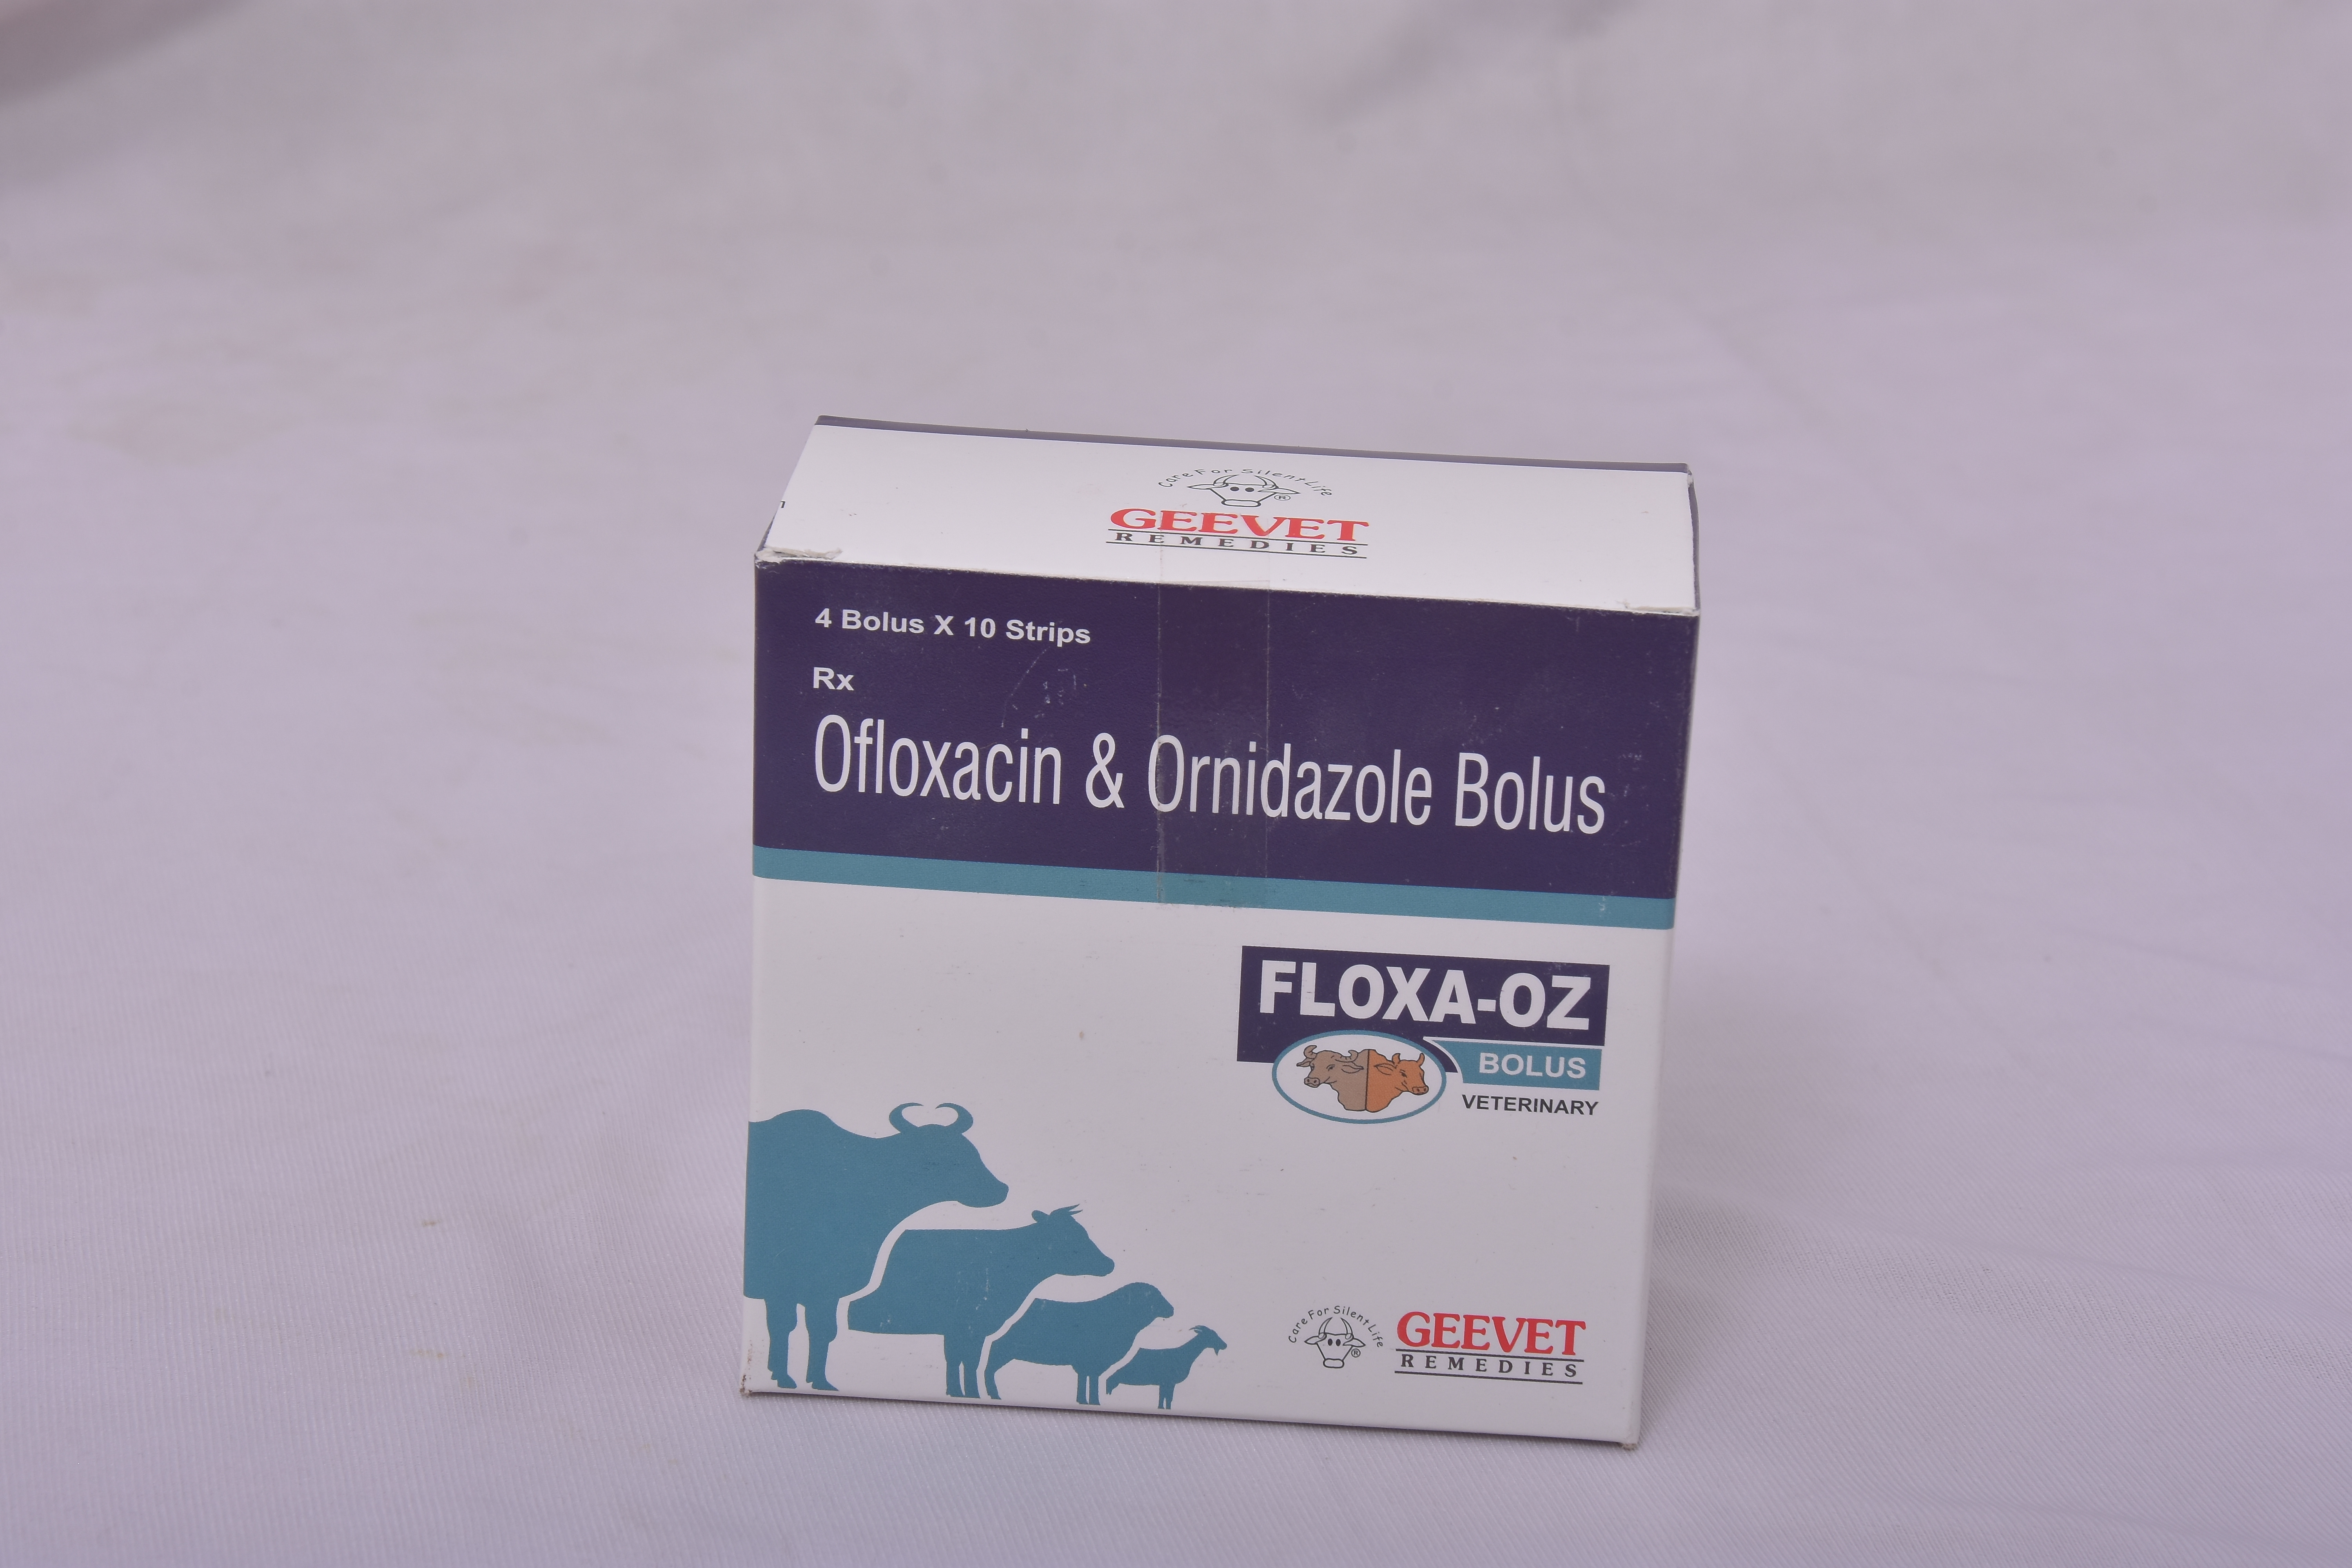 Ofloxacin and Ornidazole Bolus